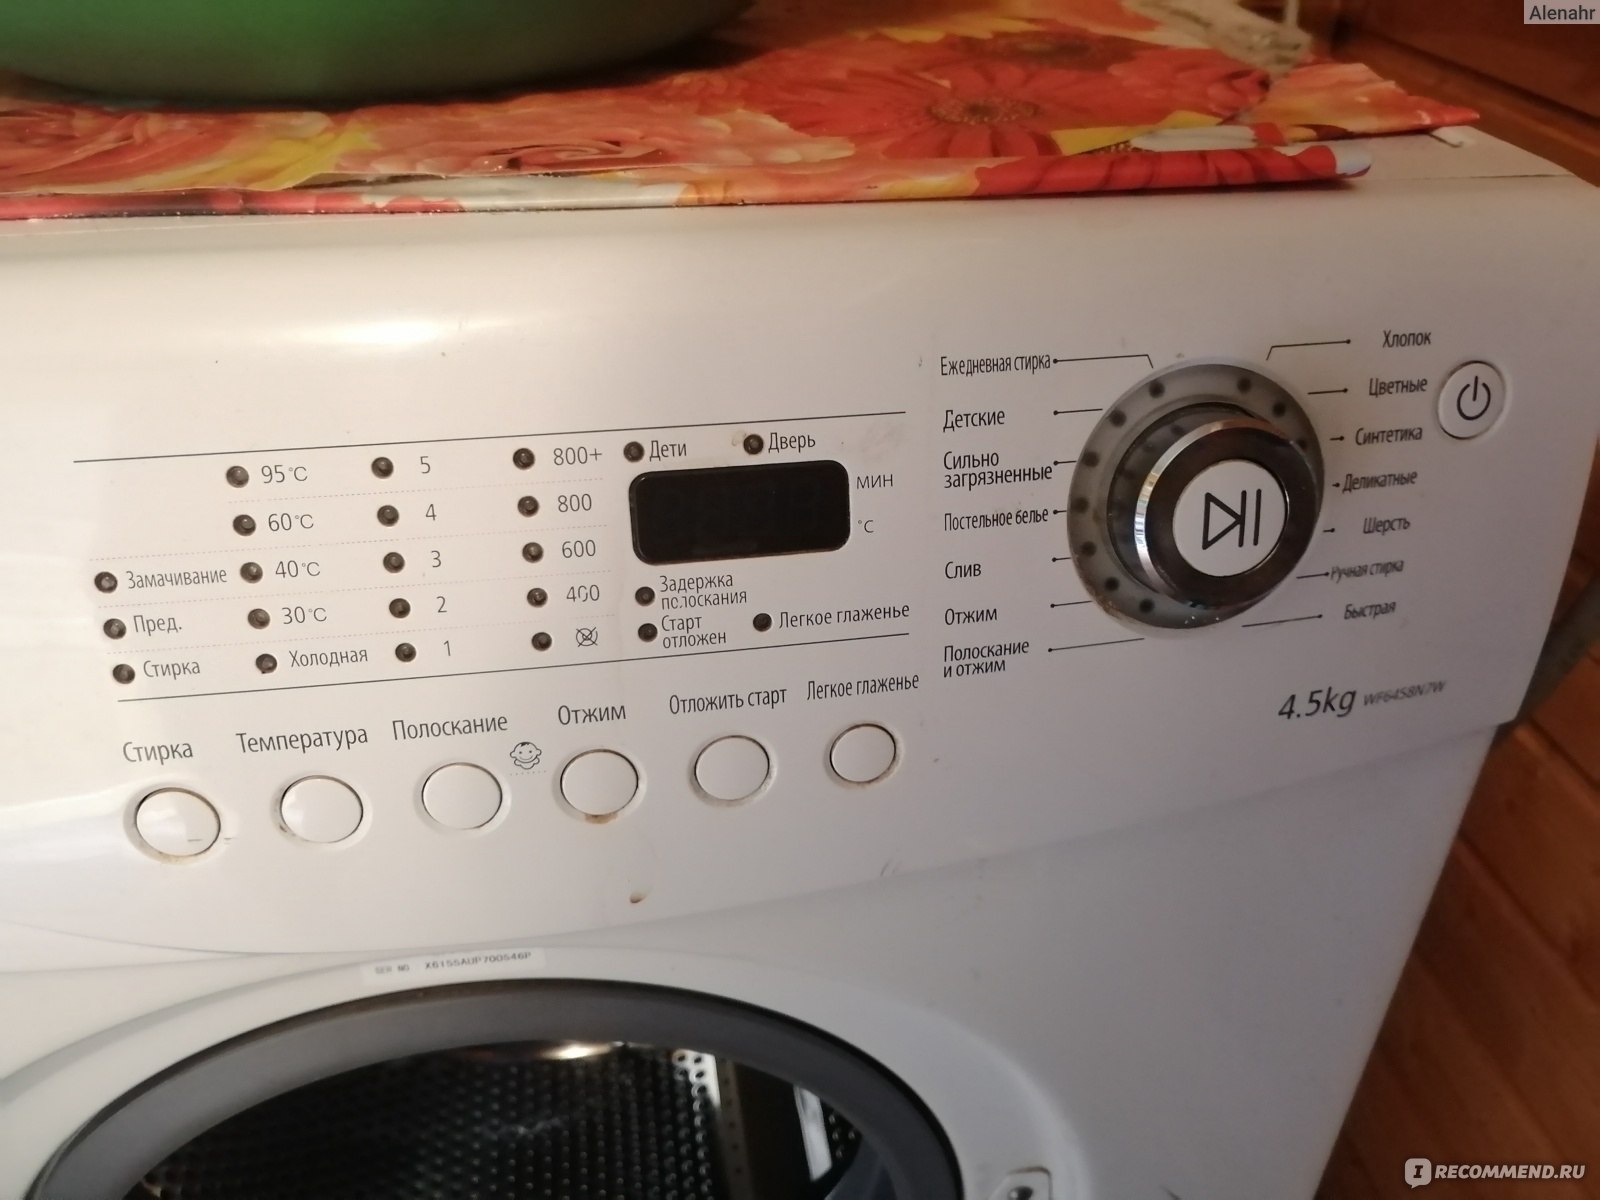 Ремонт стиральных машин Самсунг